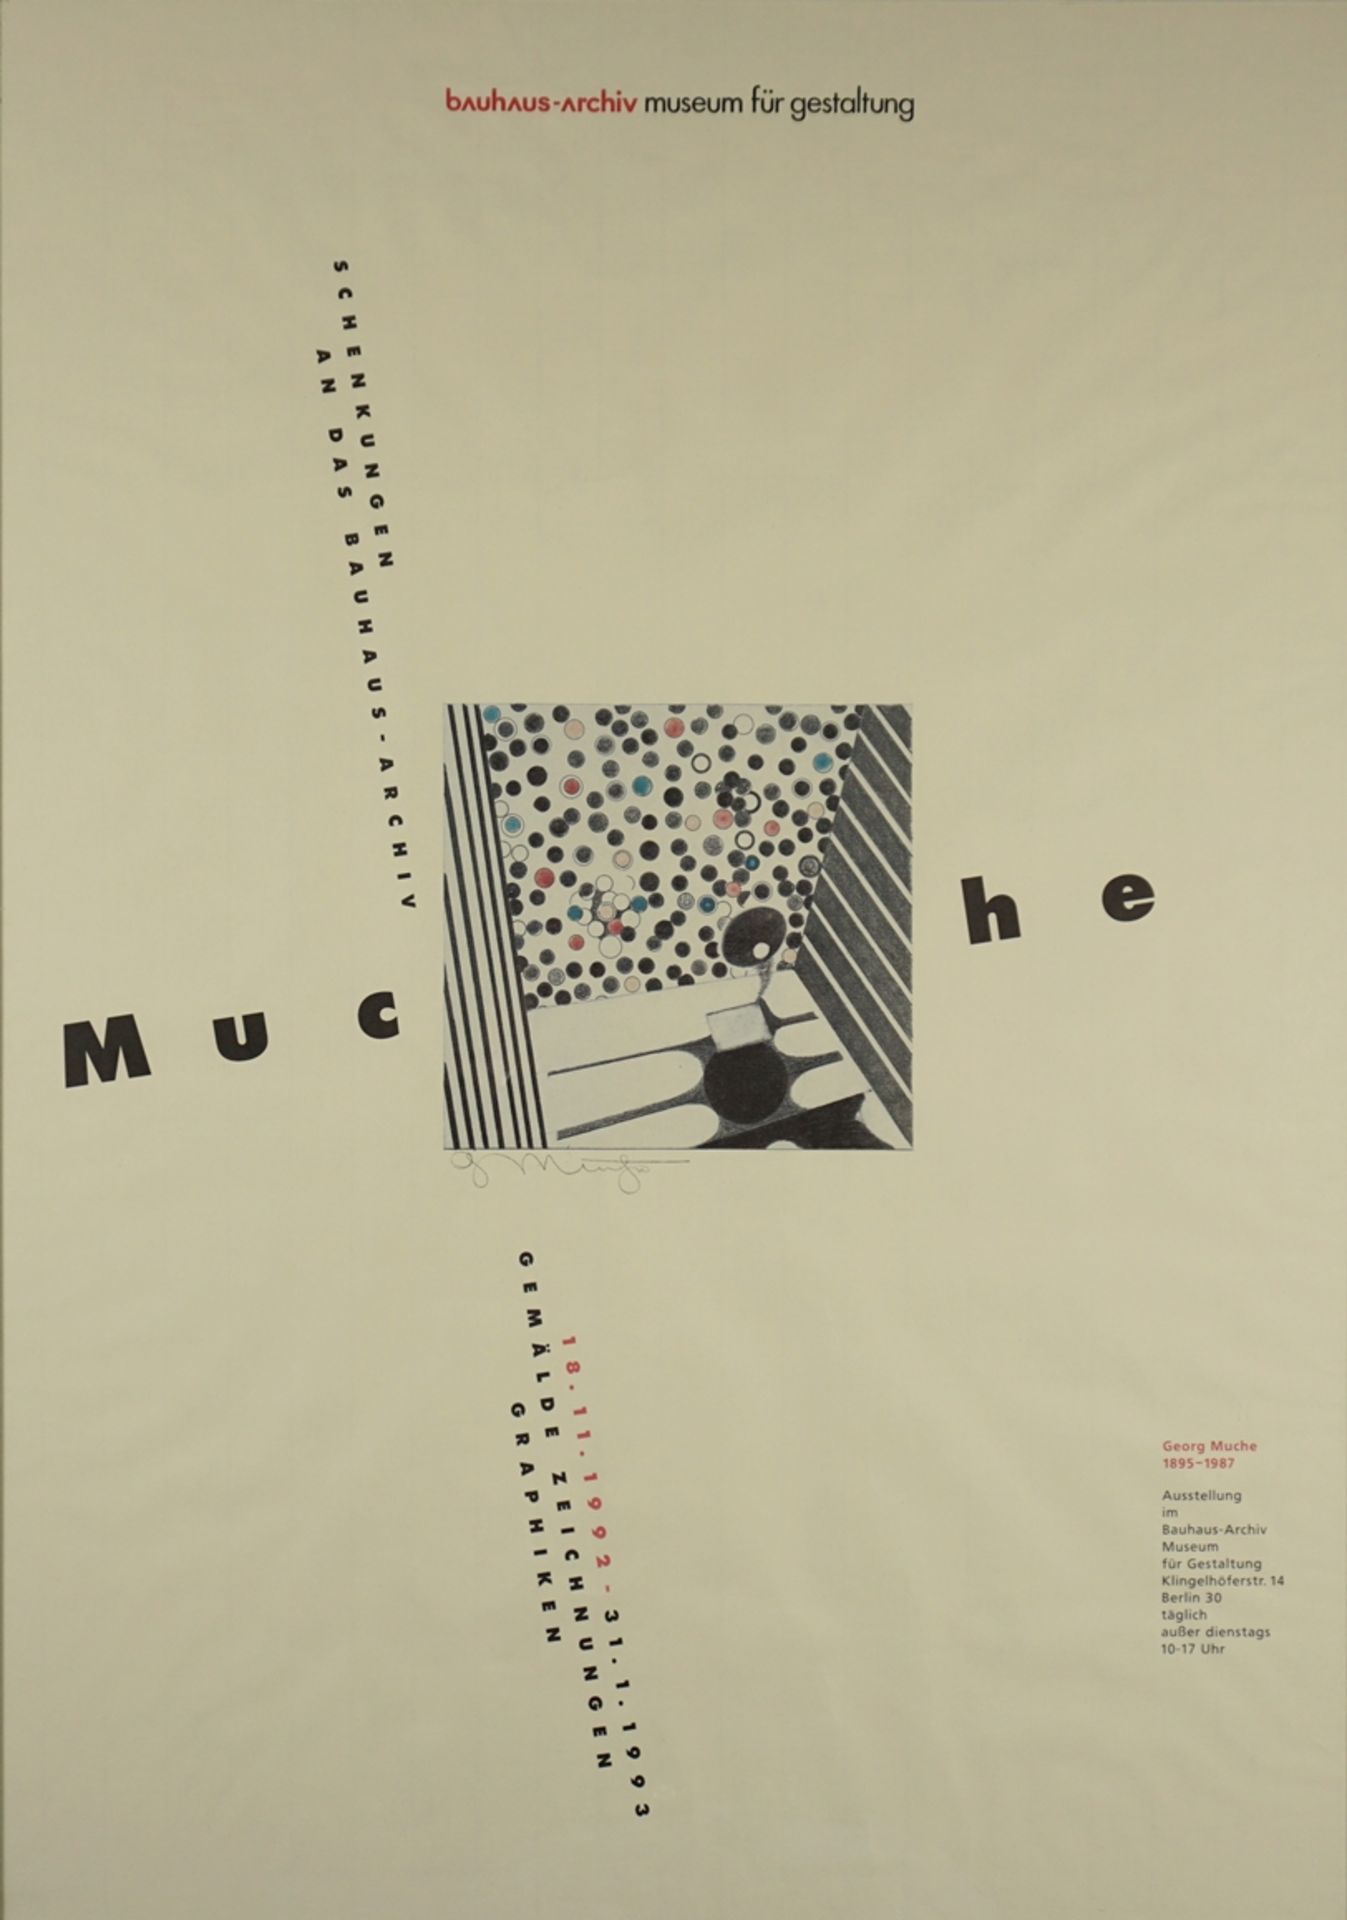 "Gemälde Zeichnungen Graphiken", Ausstellungsplakat für Georg Muche (1895 - 1987), bauhaus-archiv m